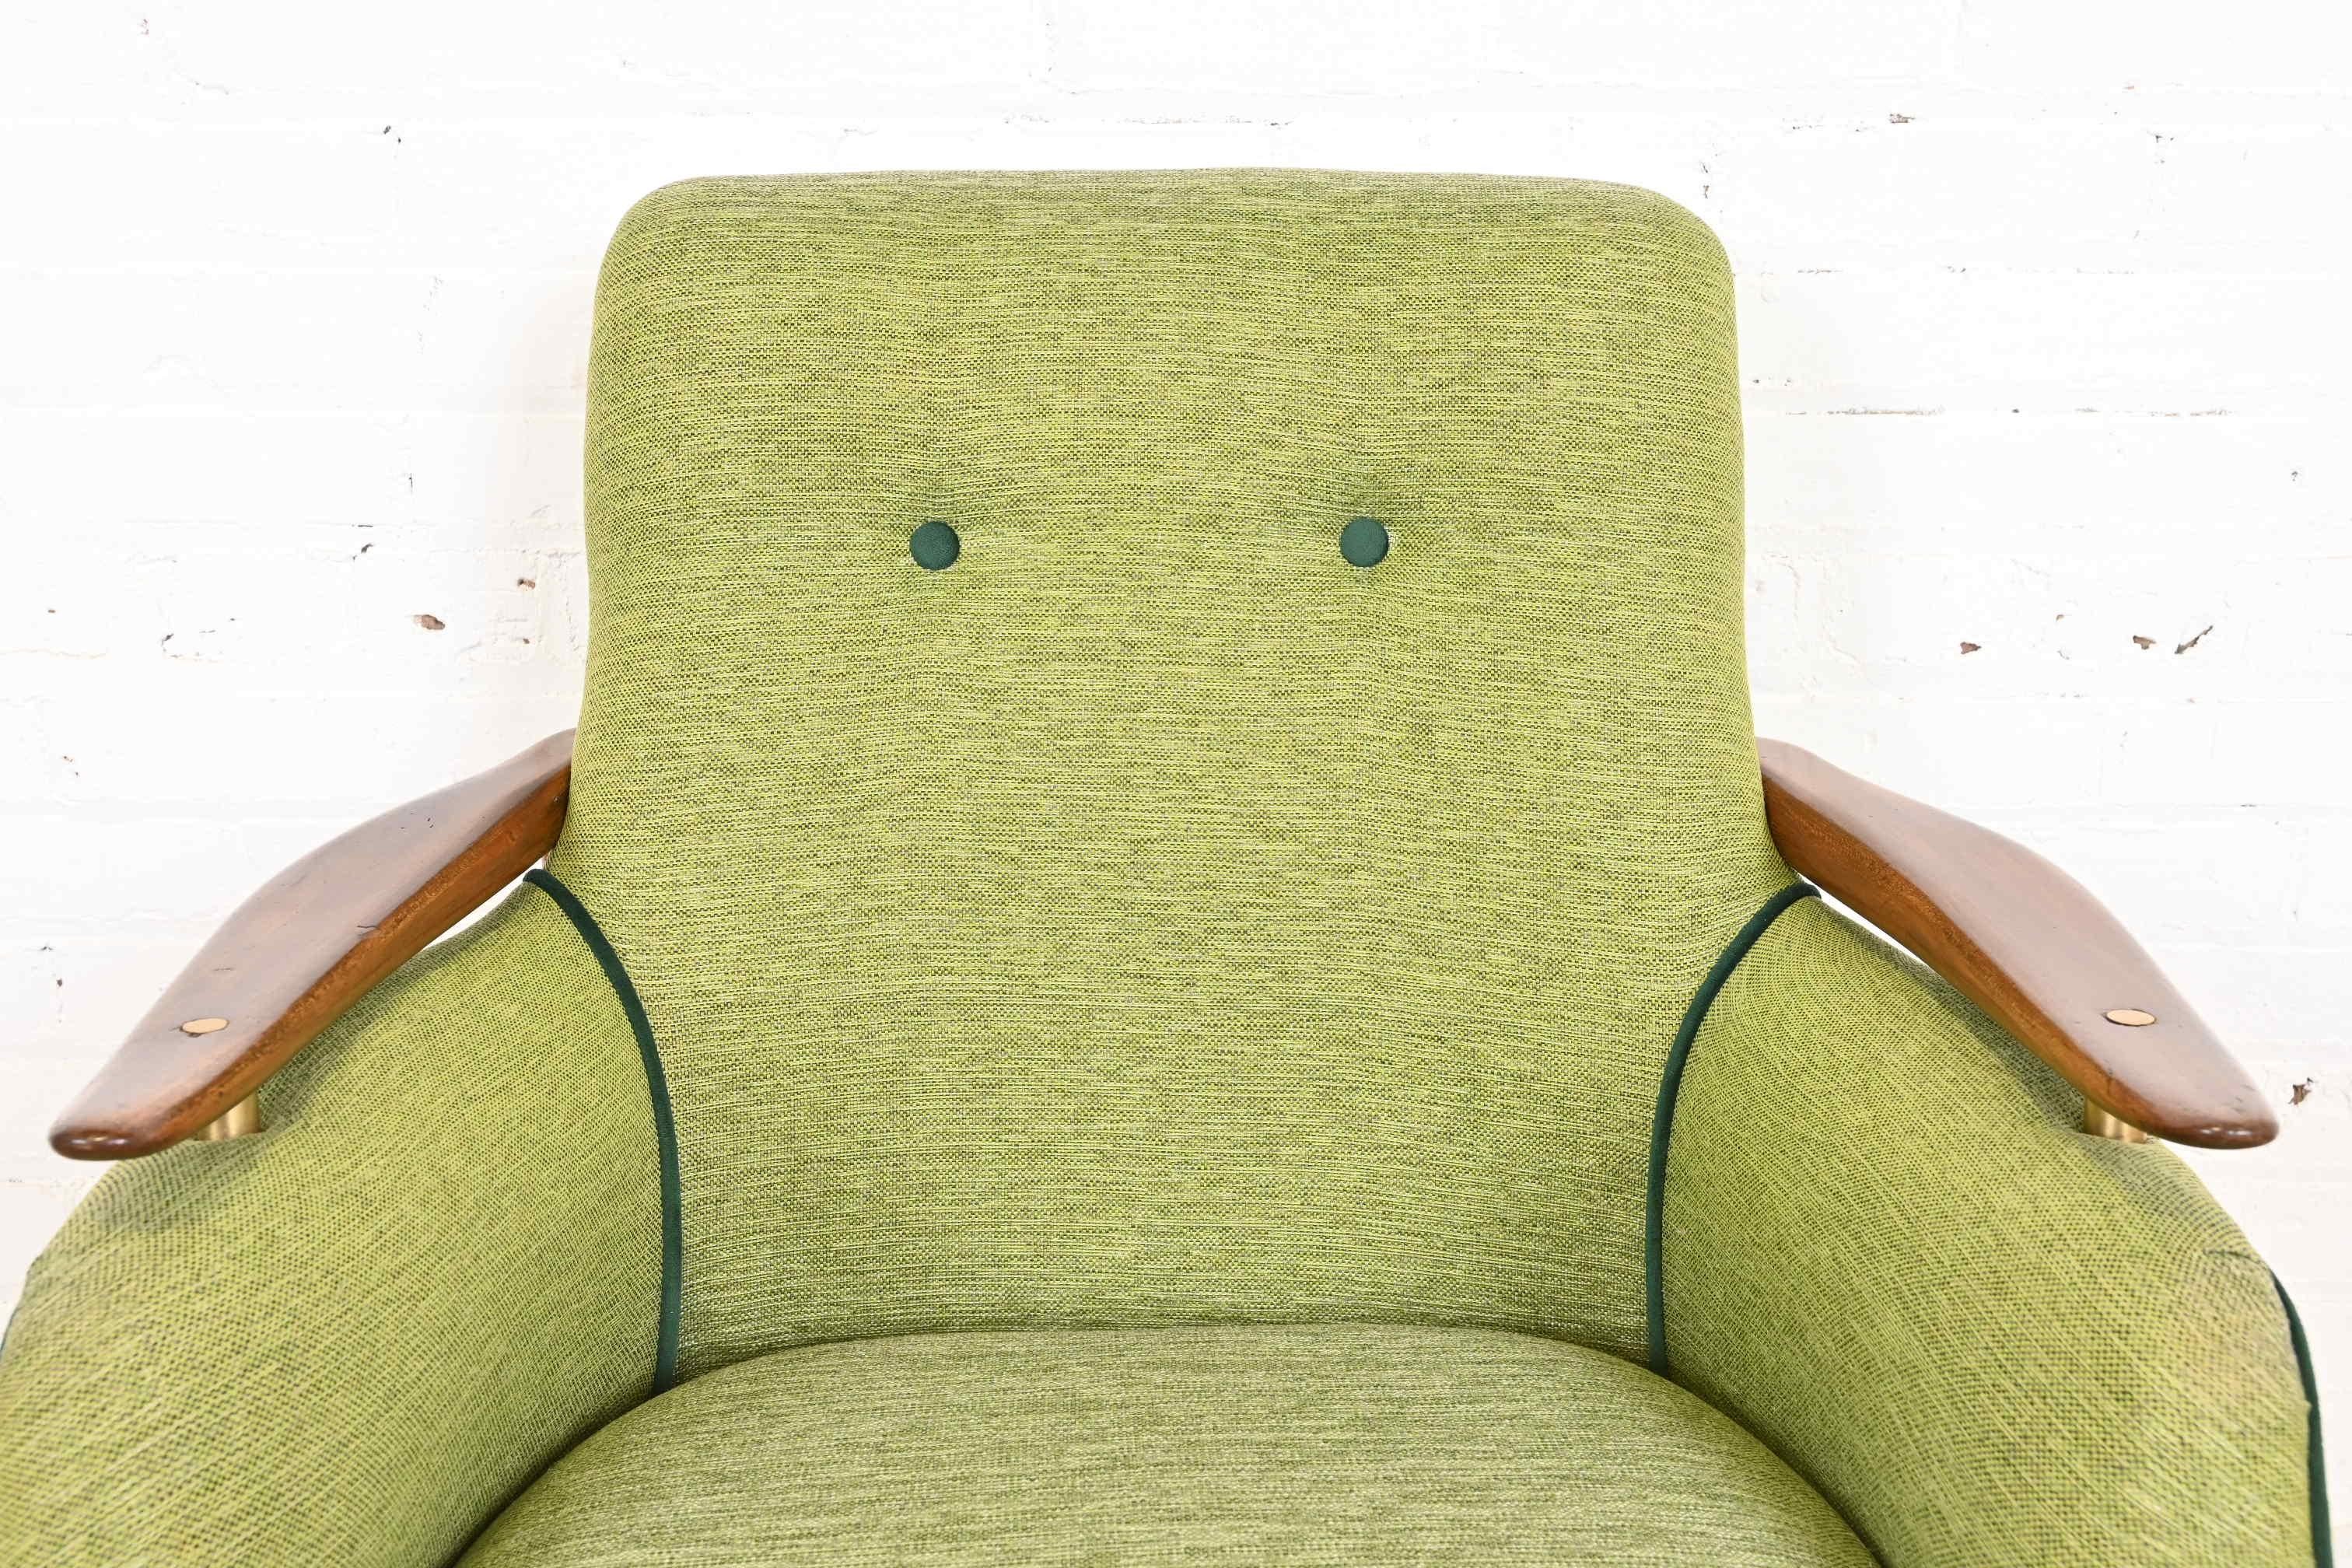 Finn Juhl Danish Modern Upholstered Teak Lounge Chairs, Pair For Sale 6